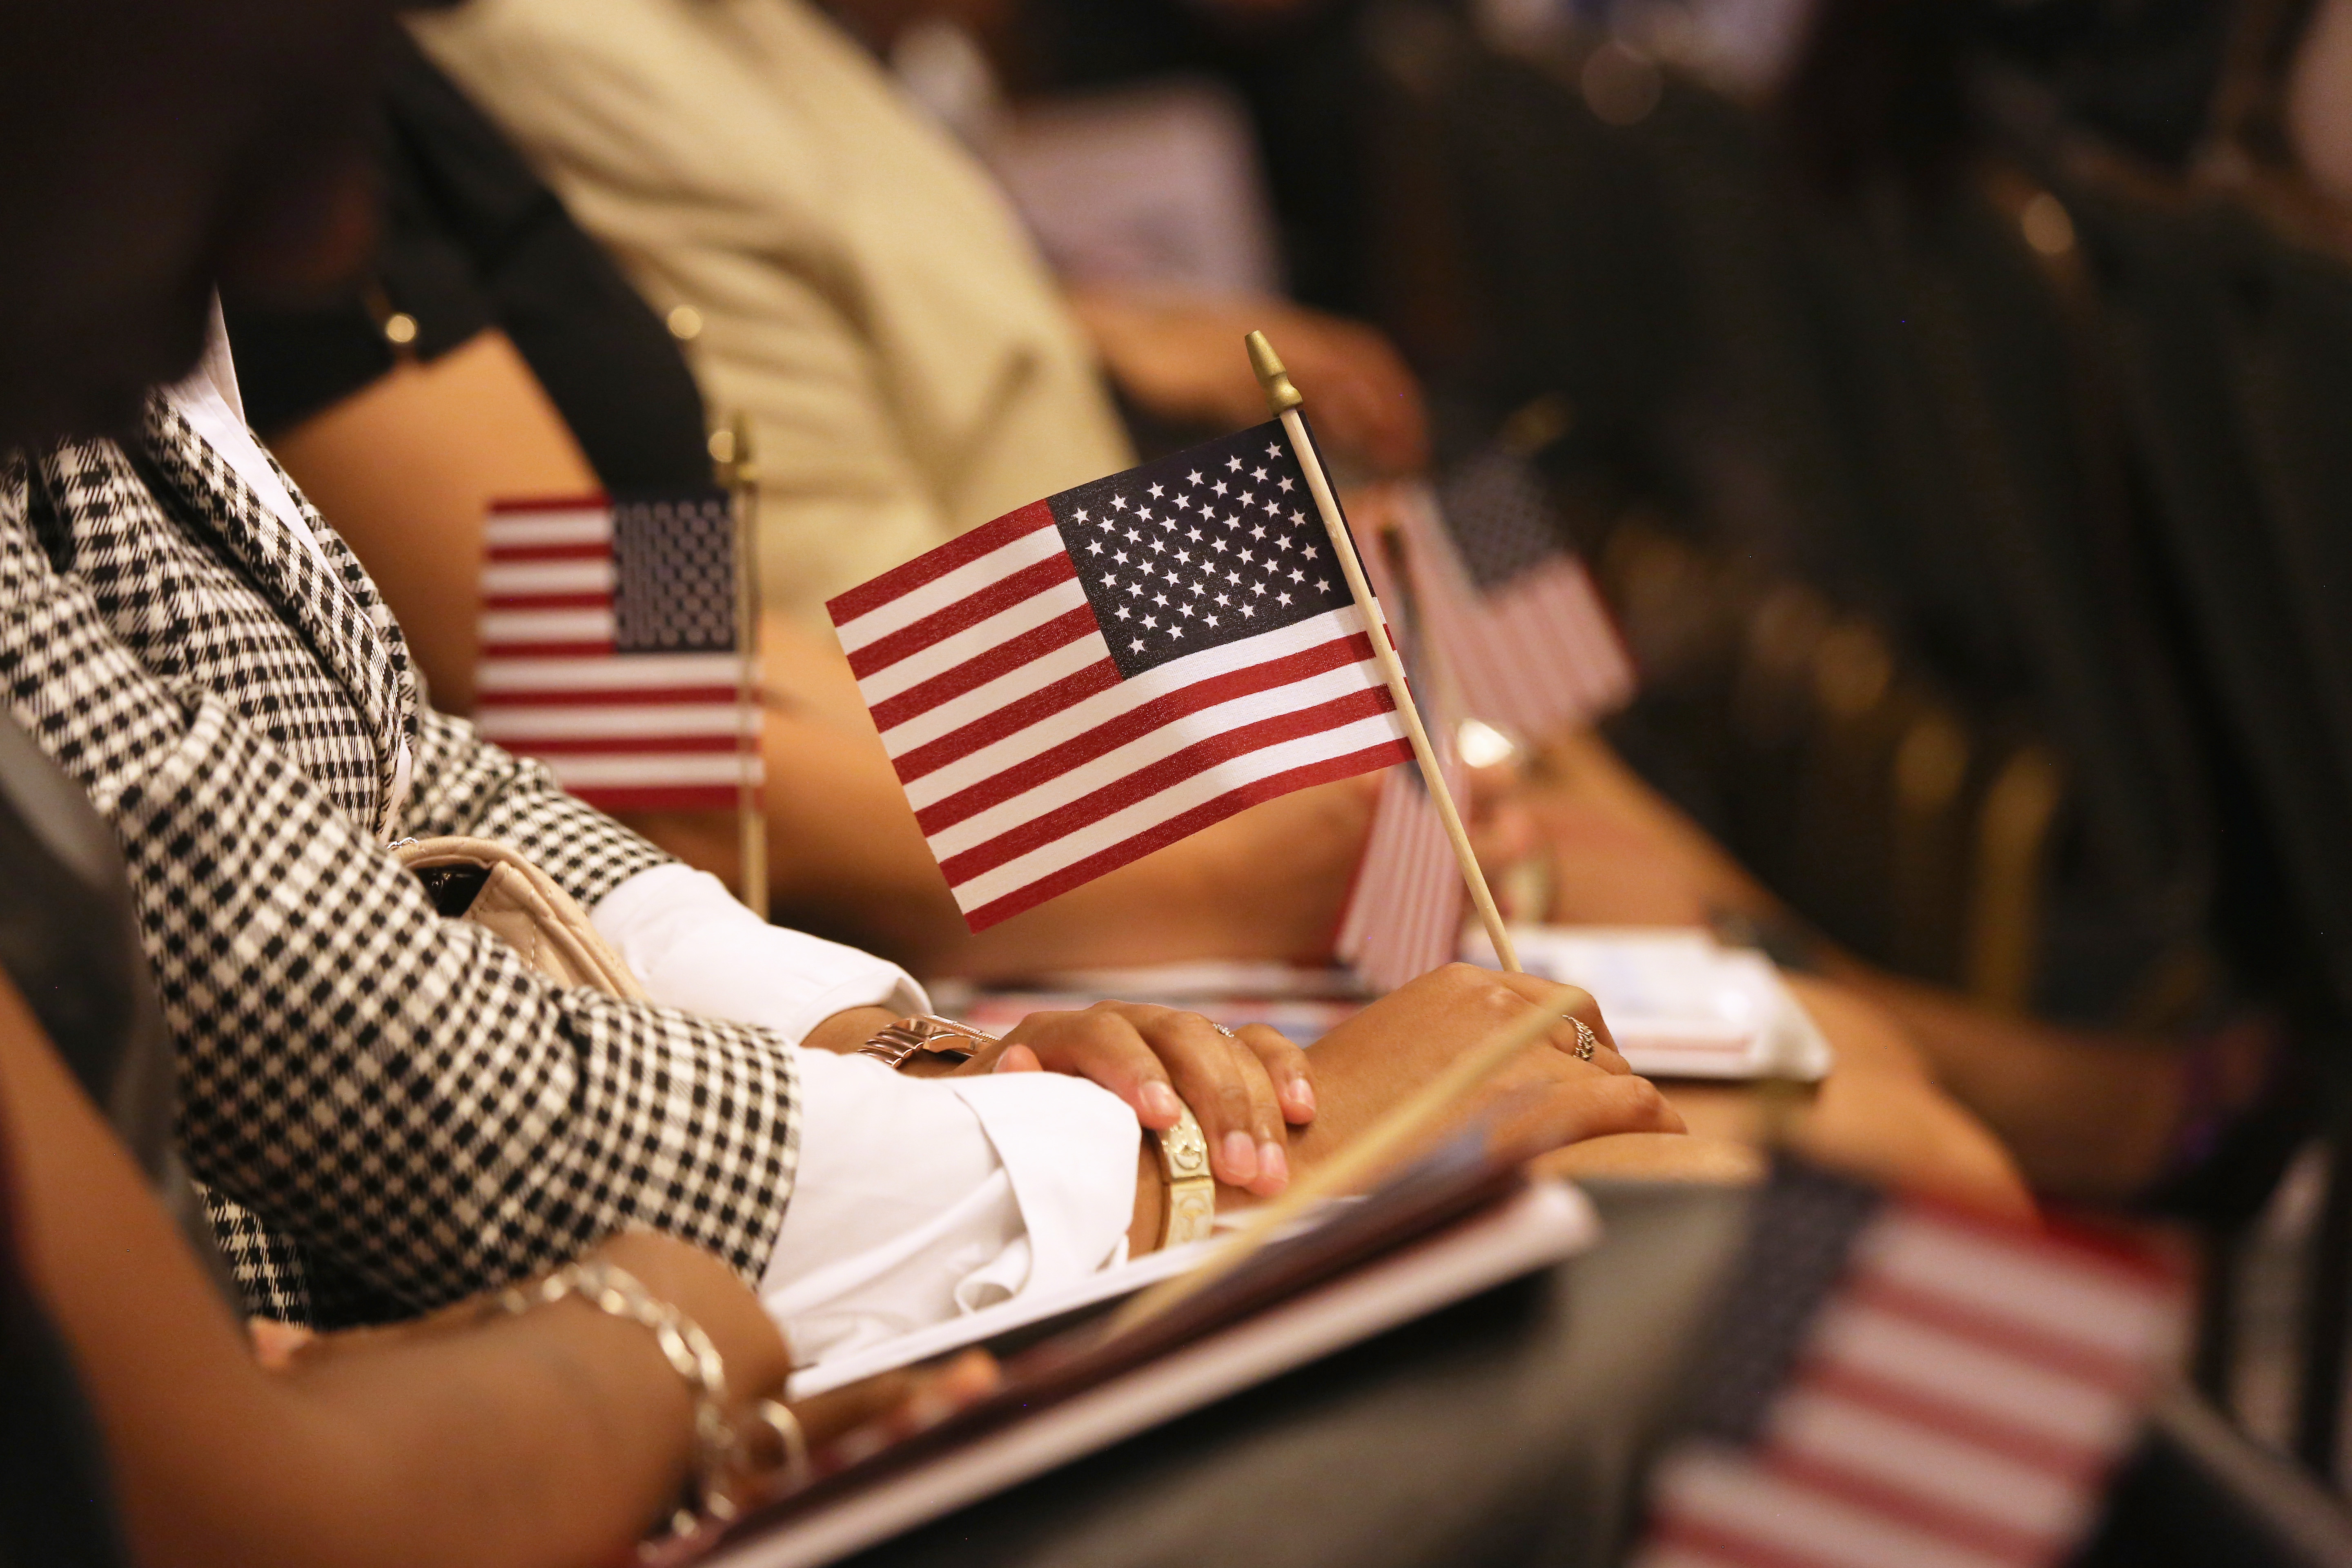 A U.S. naturalization ceremony